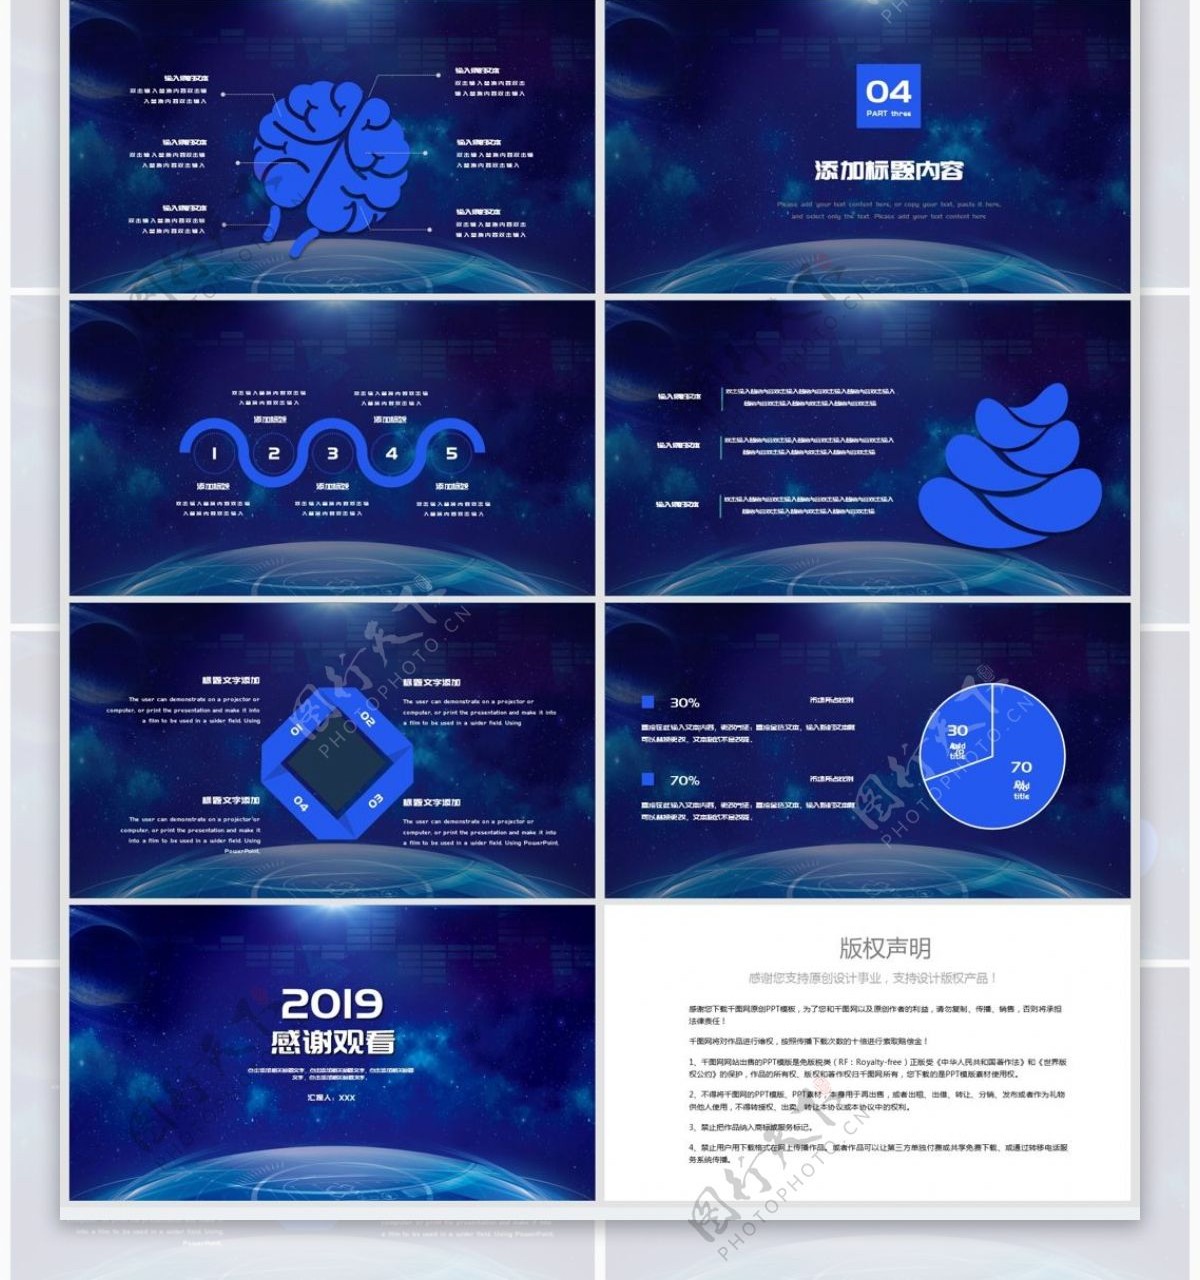 2019蓝色科技5G光速时代PPT模板